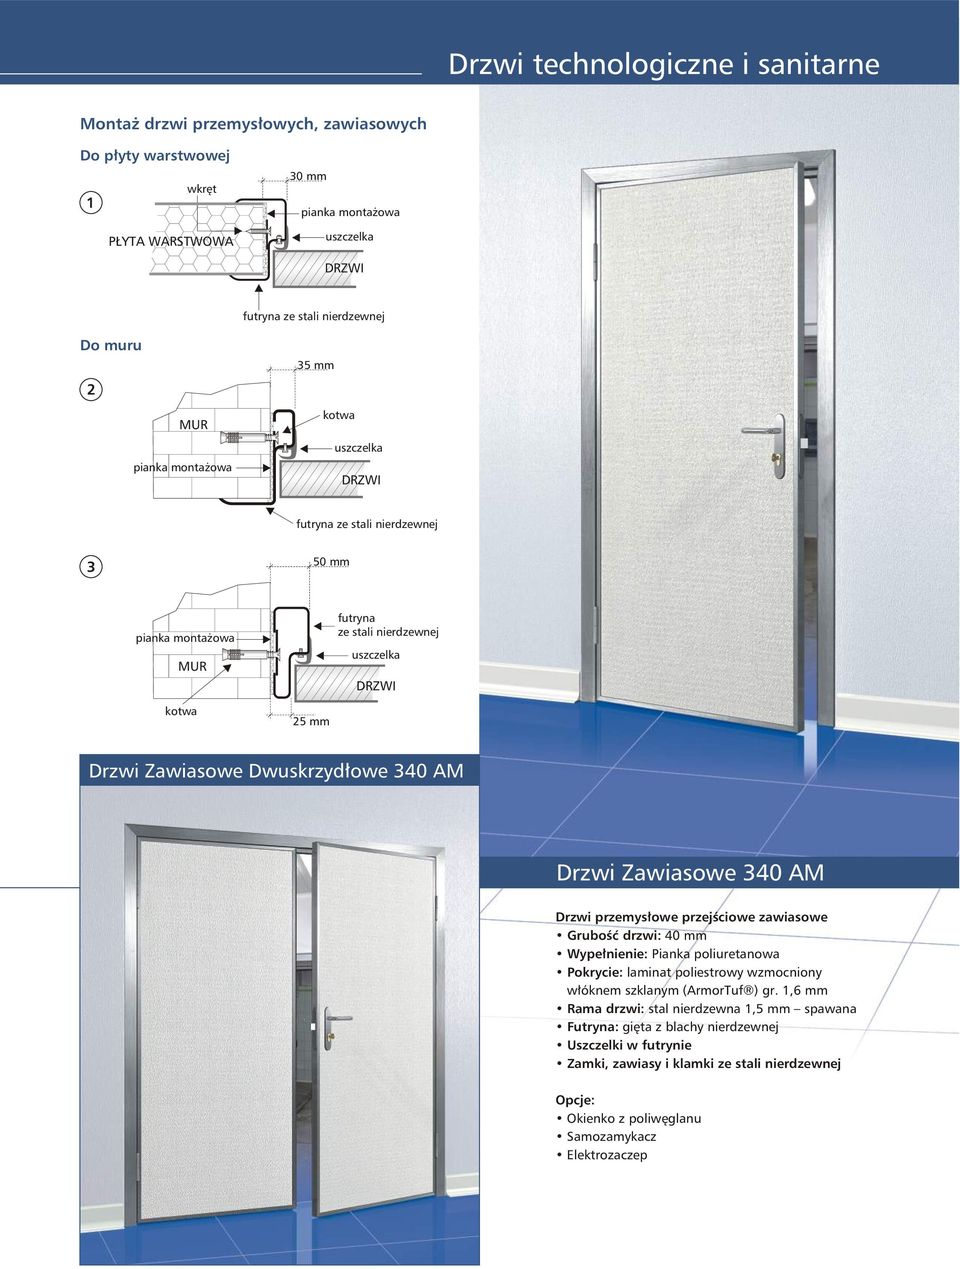 przemysłowe przejściowe zawiasowe Grubość drzwi: 40 mm Wypełnienie: Pianka poliuretanowa Pokrycie: laminat poliestrowy wzmocniony włóknem szklanym